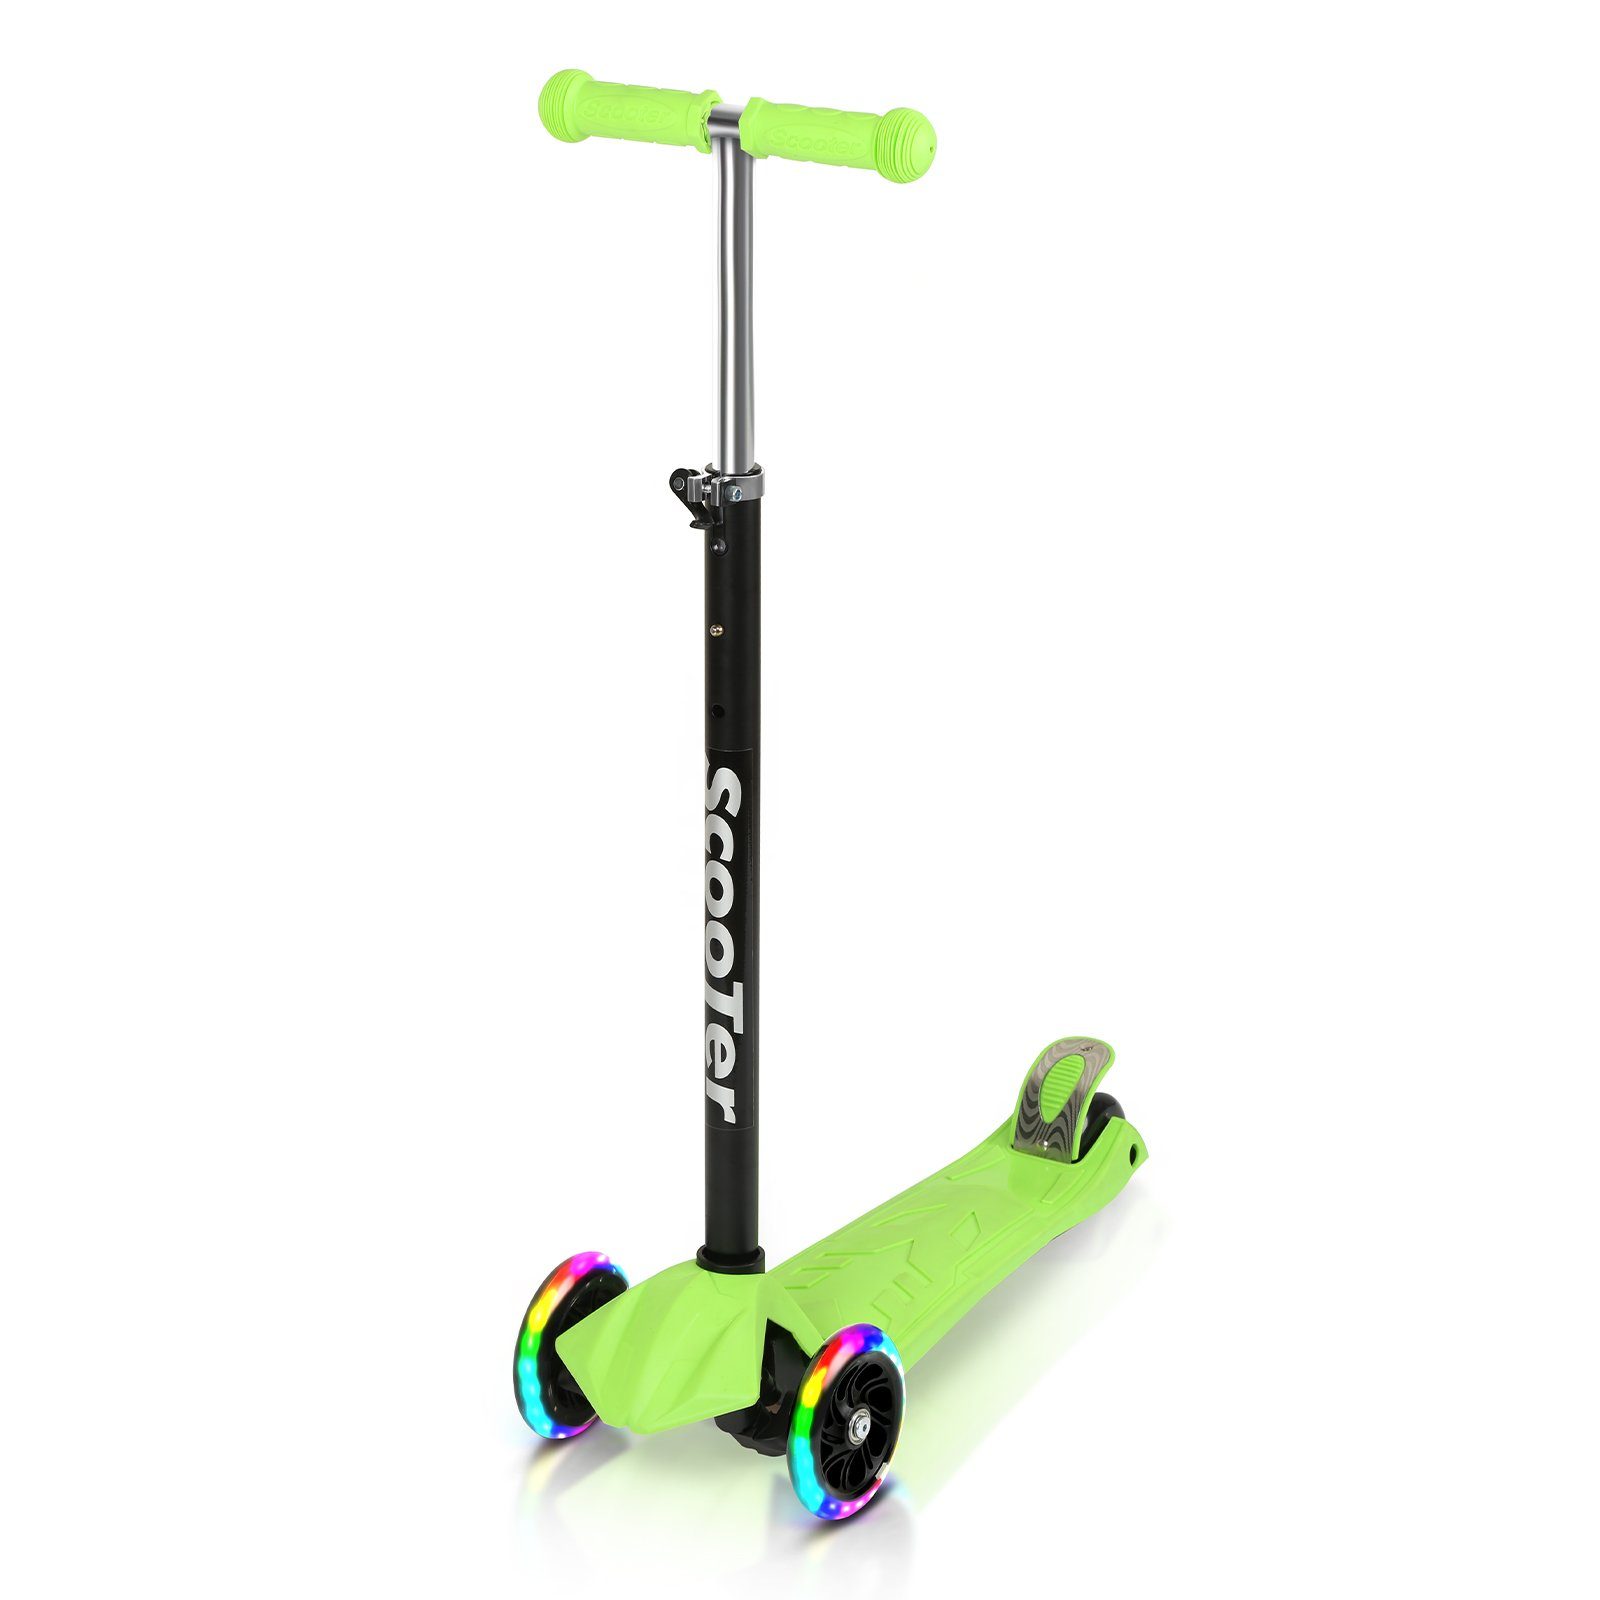 Randaco Scooter Kinderroller Tretroller LED-Räder bis 50 kg Höhenverstellbar